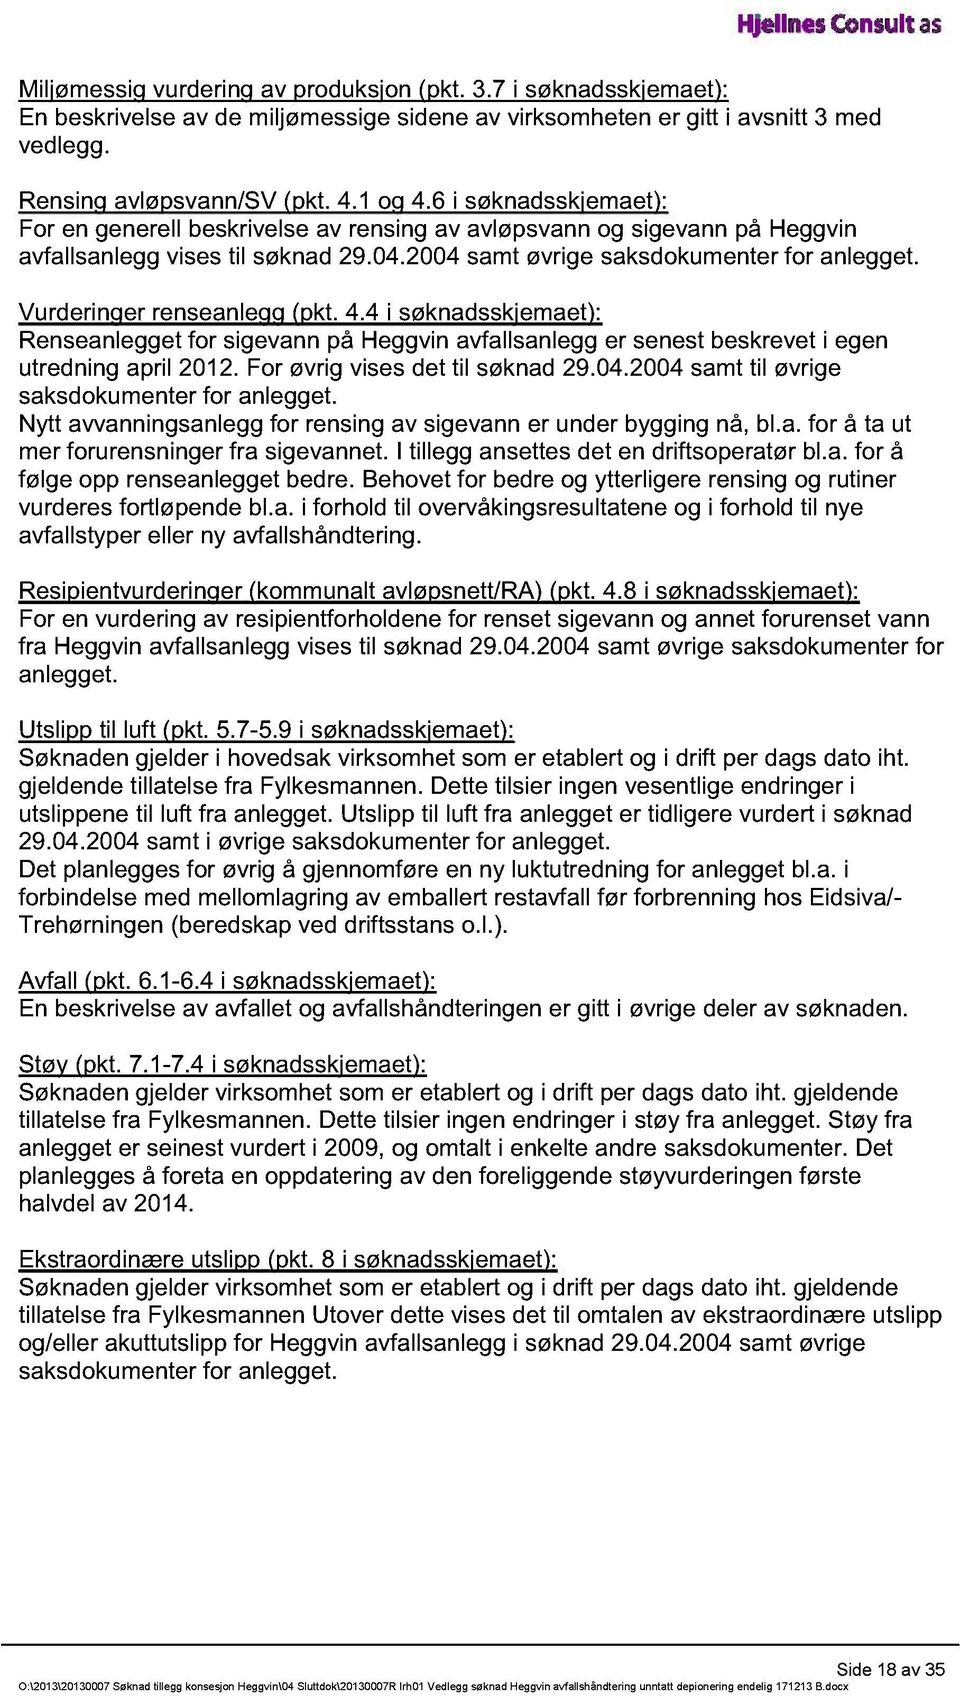 Vurderinger renseanlegg (pkt. 4.4 i søknadsskjemaet): Renseanlegget for sigevann på Heggvin avfallsanlegg er senest beskrevet i egen utredning april 2012. For øvrig vises det til søknad 29.04.